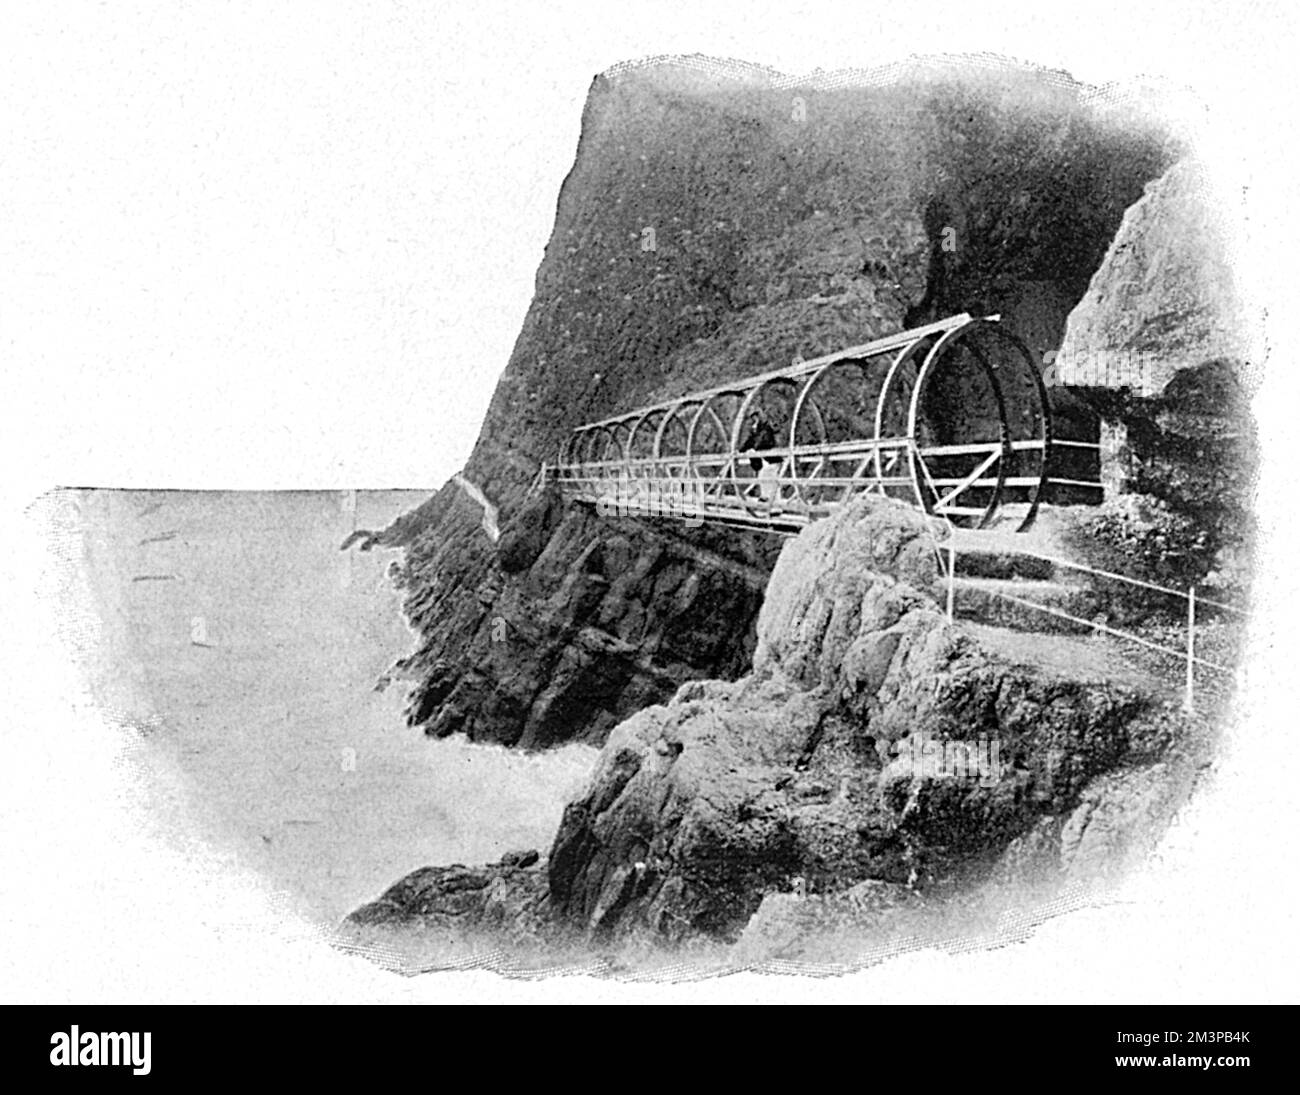 Il sentiero della scogliera di Gobbins a Islandmagee, Contea di Antrim, Irlanda del Nord. Questa immagine mostra la costa rocciosa con ponte e sentiero che sono stati costruiti lungo il lato della scogliera. Il sentiero panoramico costiero è stato costruito dall'ingegnere Berkeley Deane Wise. Data: 1907 Foto Stock